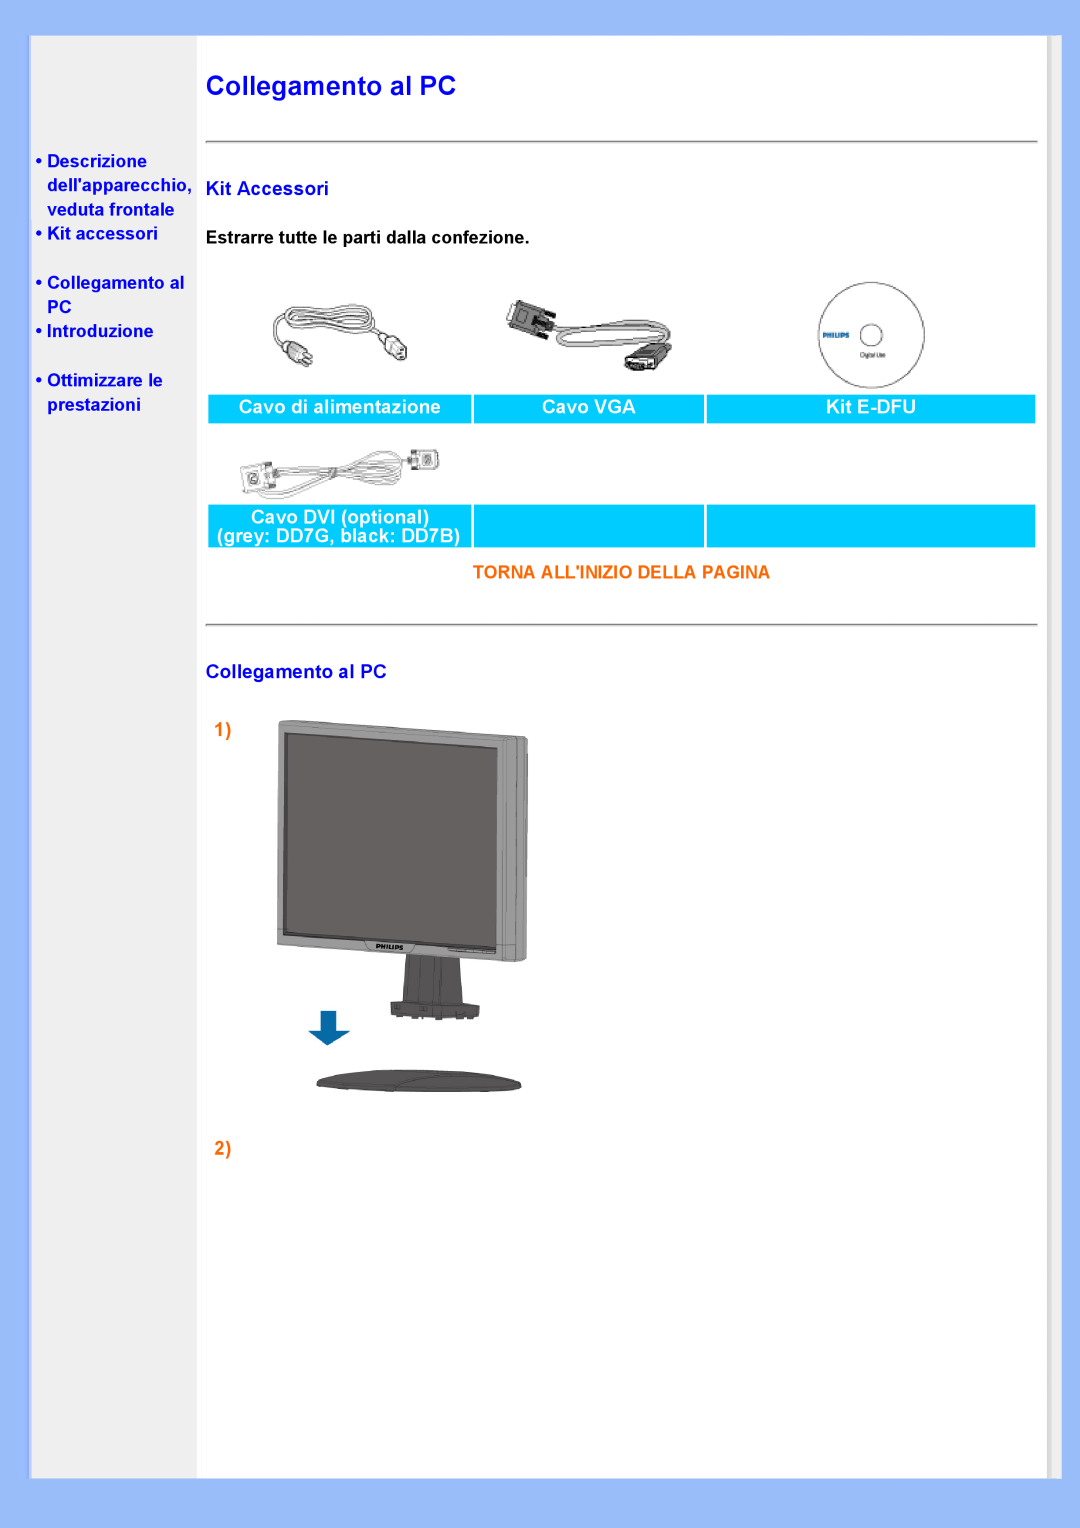 Philips 220VW8 Collegamento al PC, Kit Accessori, Cavo di alimentazione, Cavo VGA, Kit E-DFU, •Ottimizzare le prestazioni 